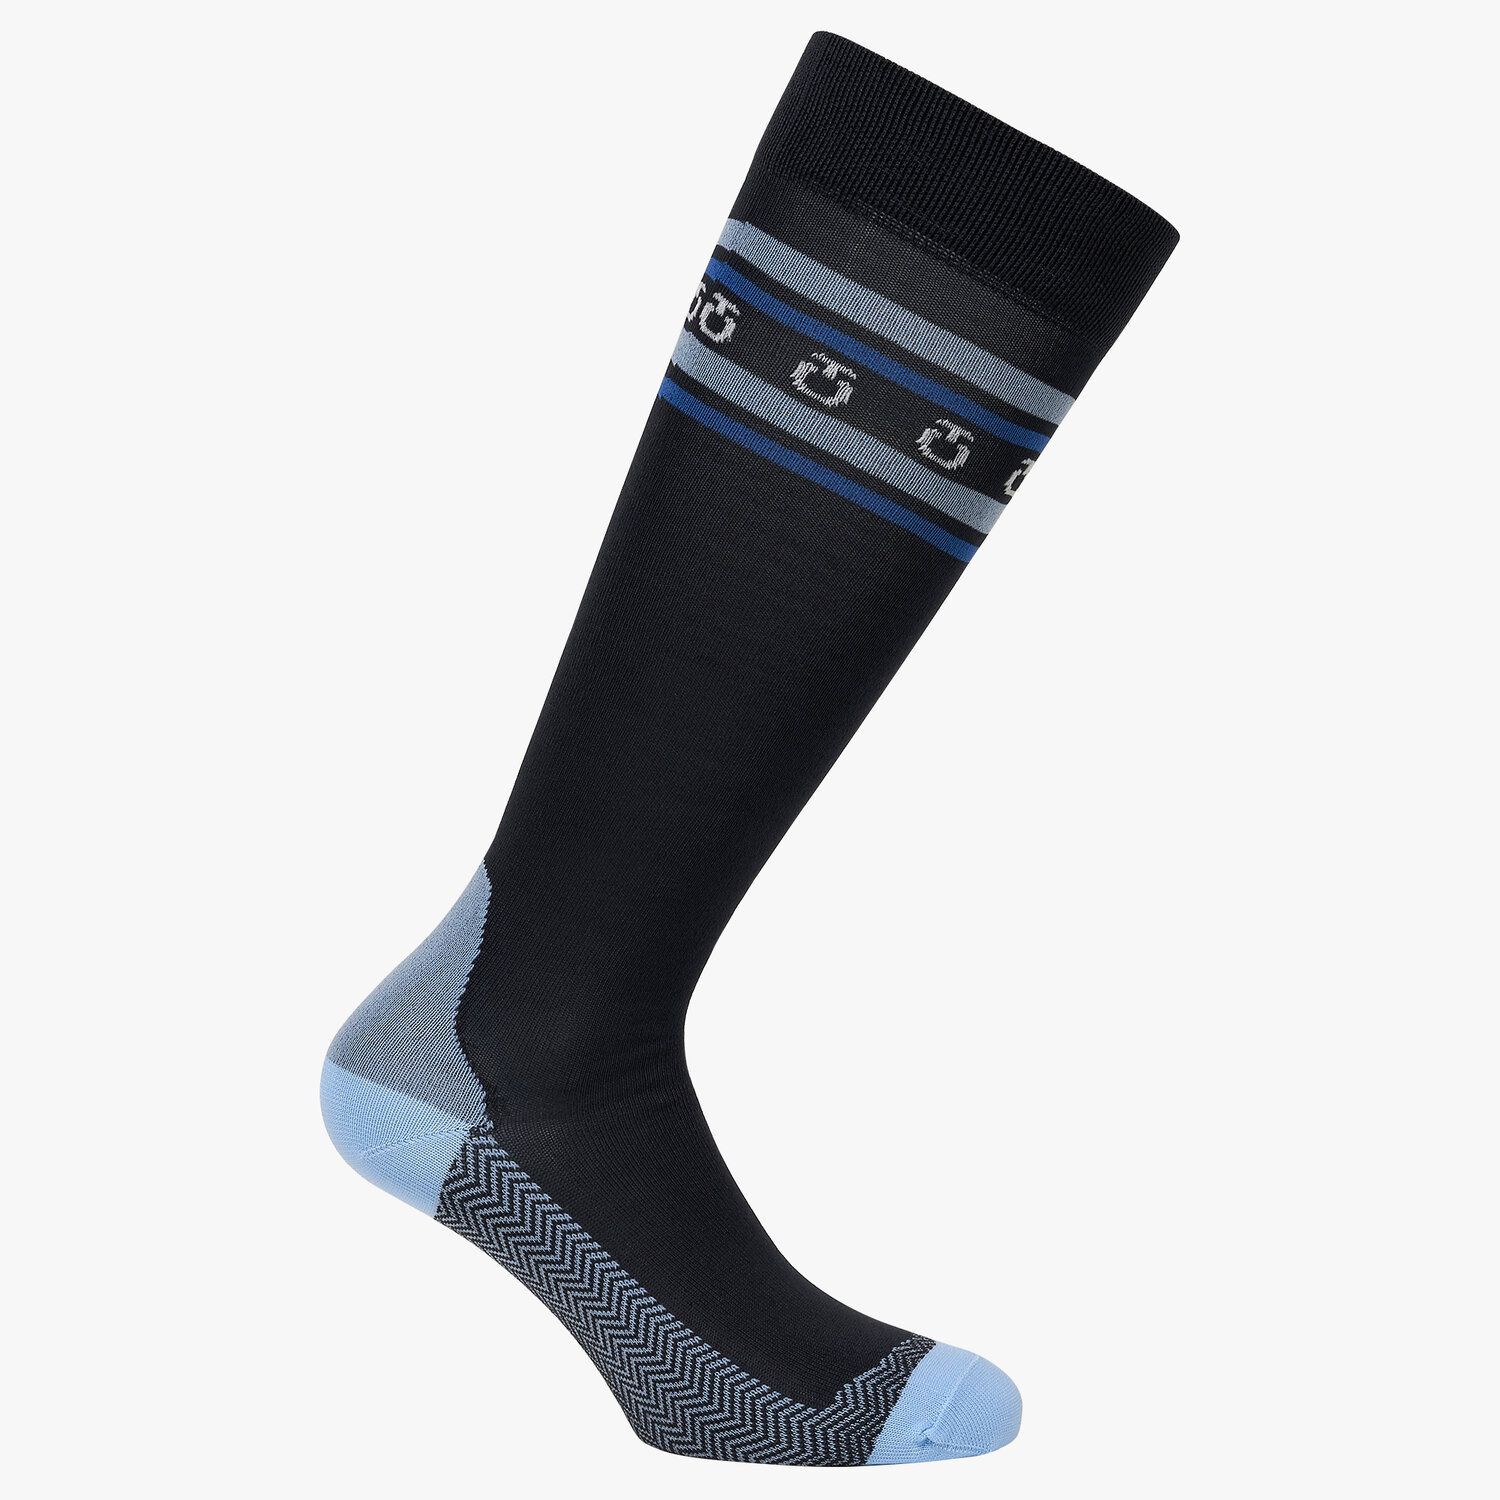 Cavalleria Toscana Breathable socks with logos 797C-1